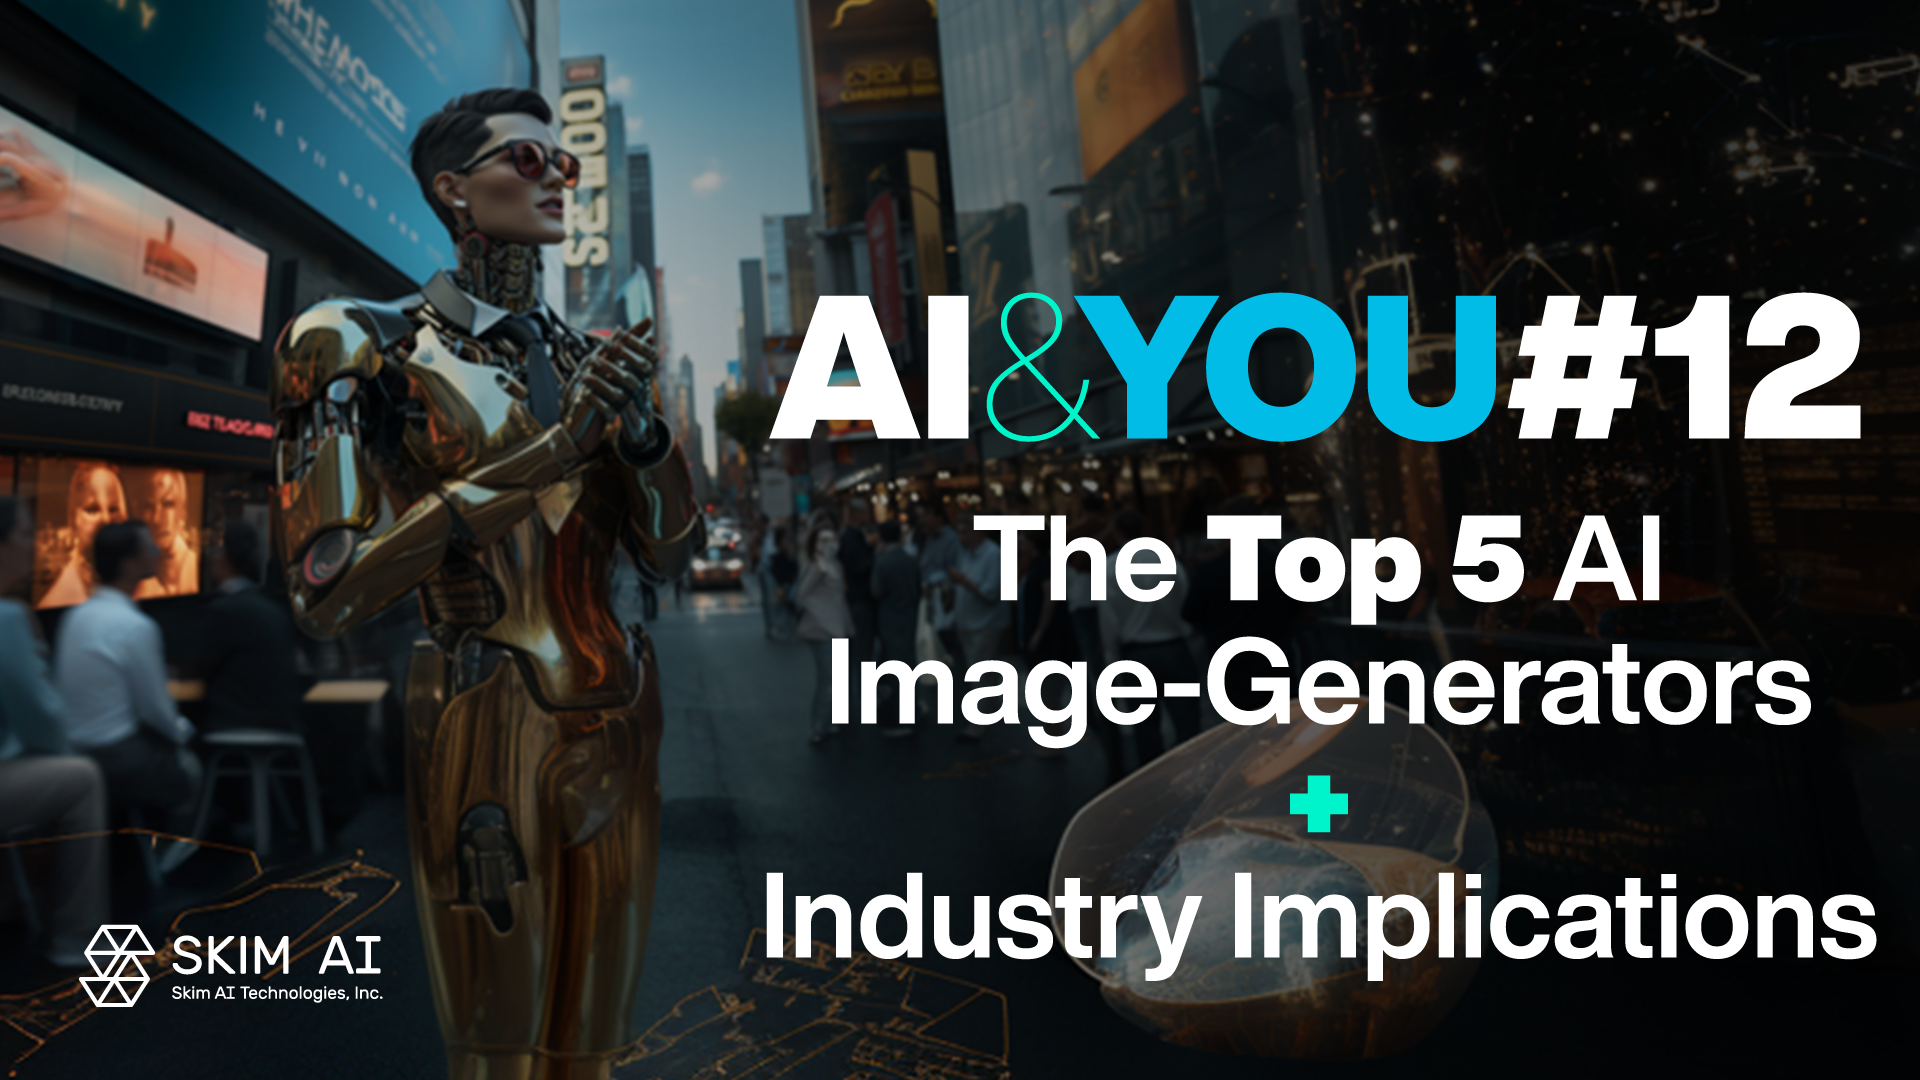 AI & YOU #12: 5 найкращих ШІ-генераторів зображень + наслідки для промисловості